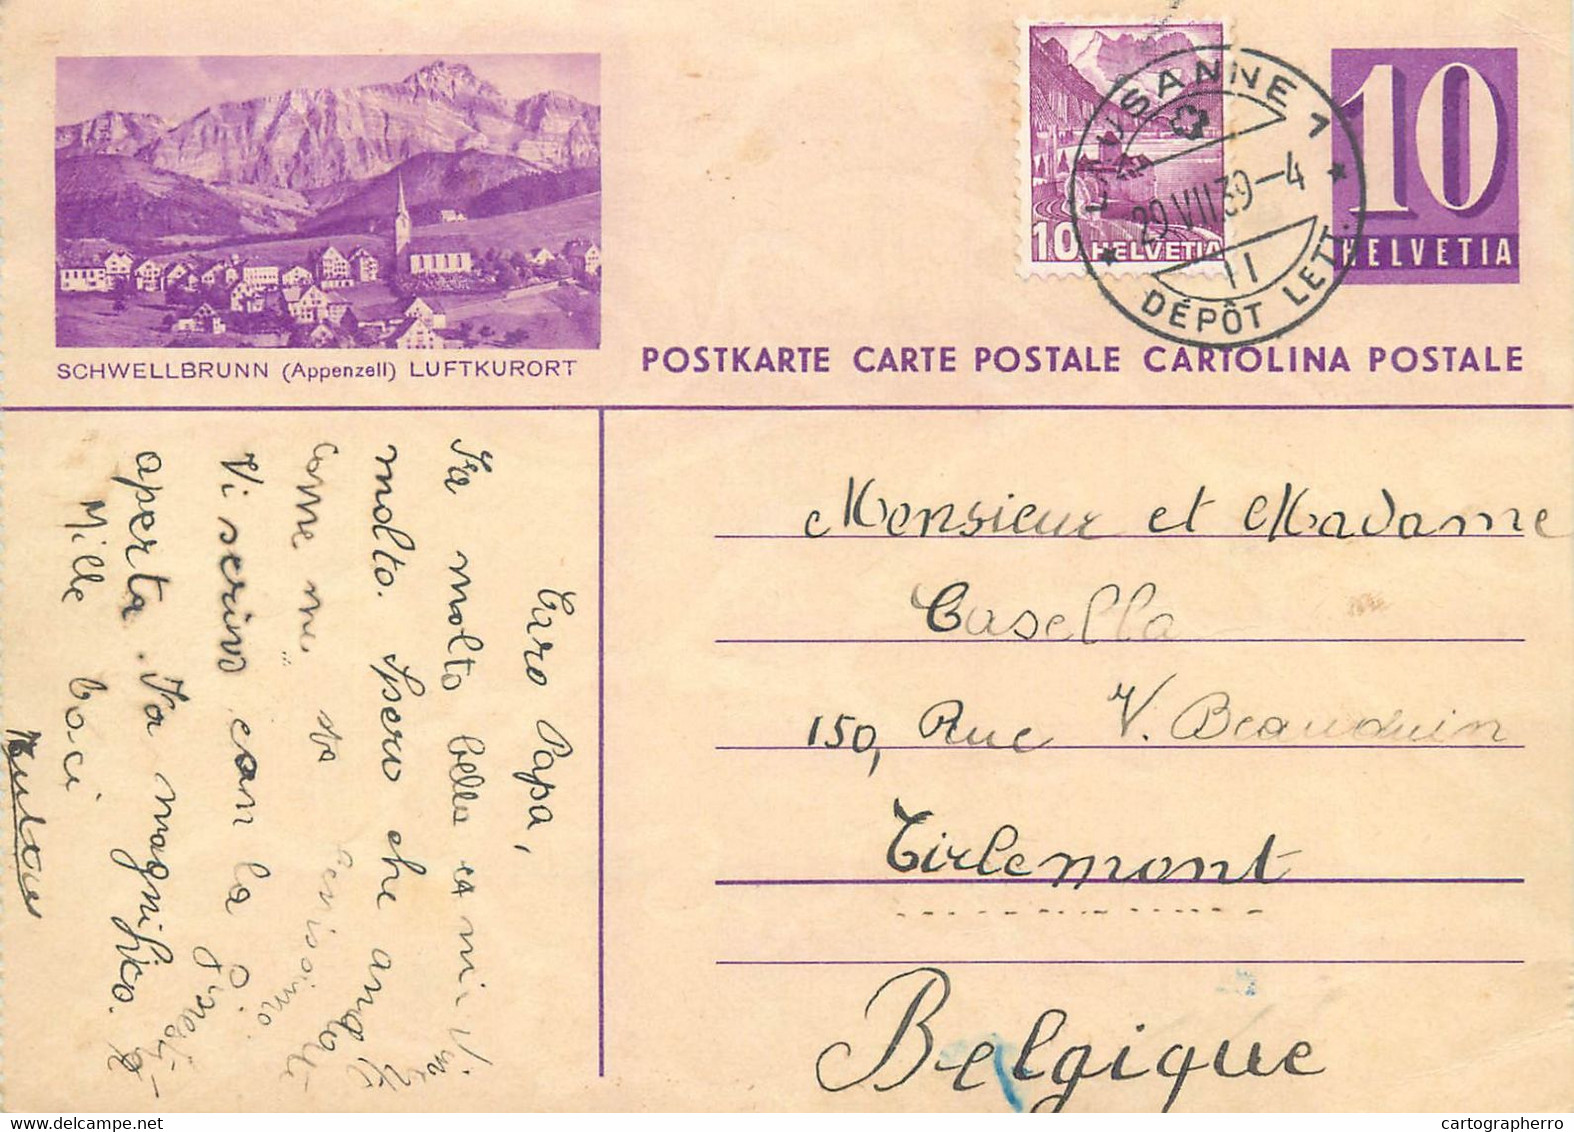 Switzerland Suisse Schweiz Entier Postal Helvetia 10c Postal Stationery Schwellbrunn 1939 - Schwellbrunn